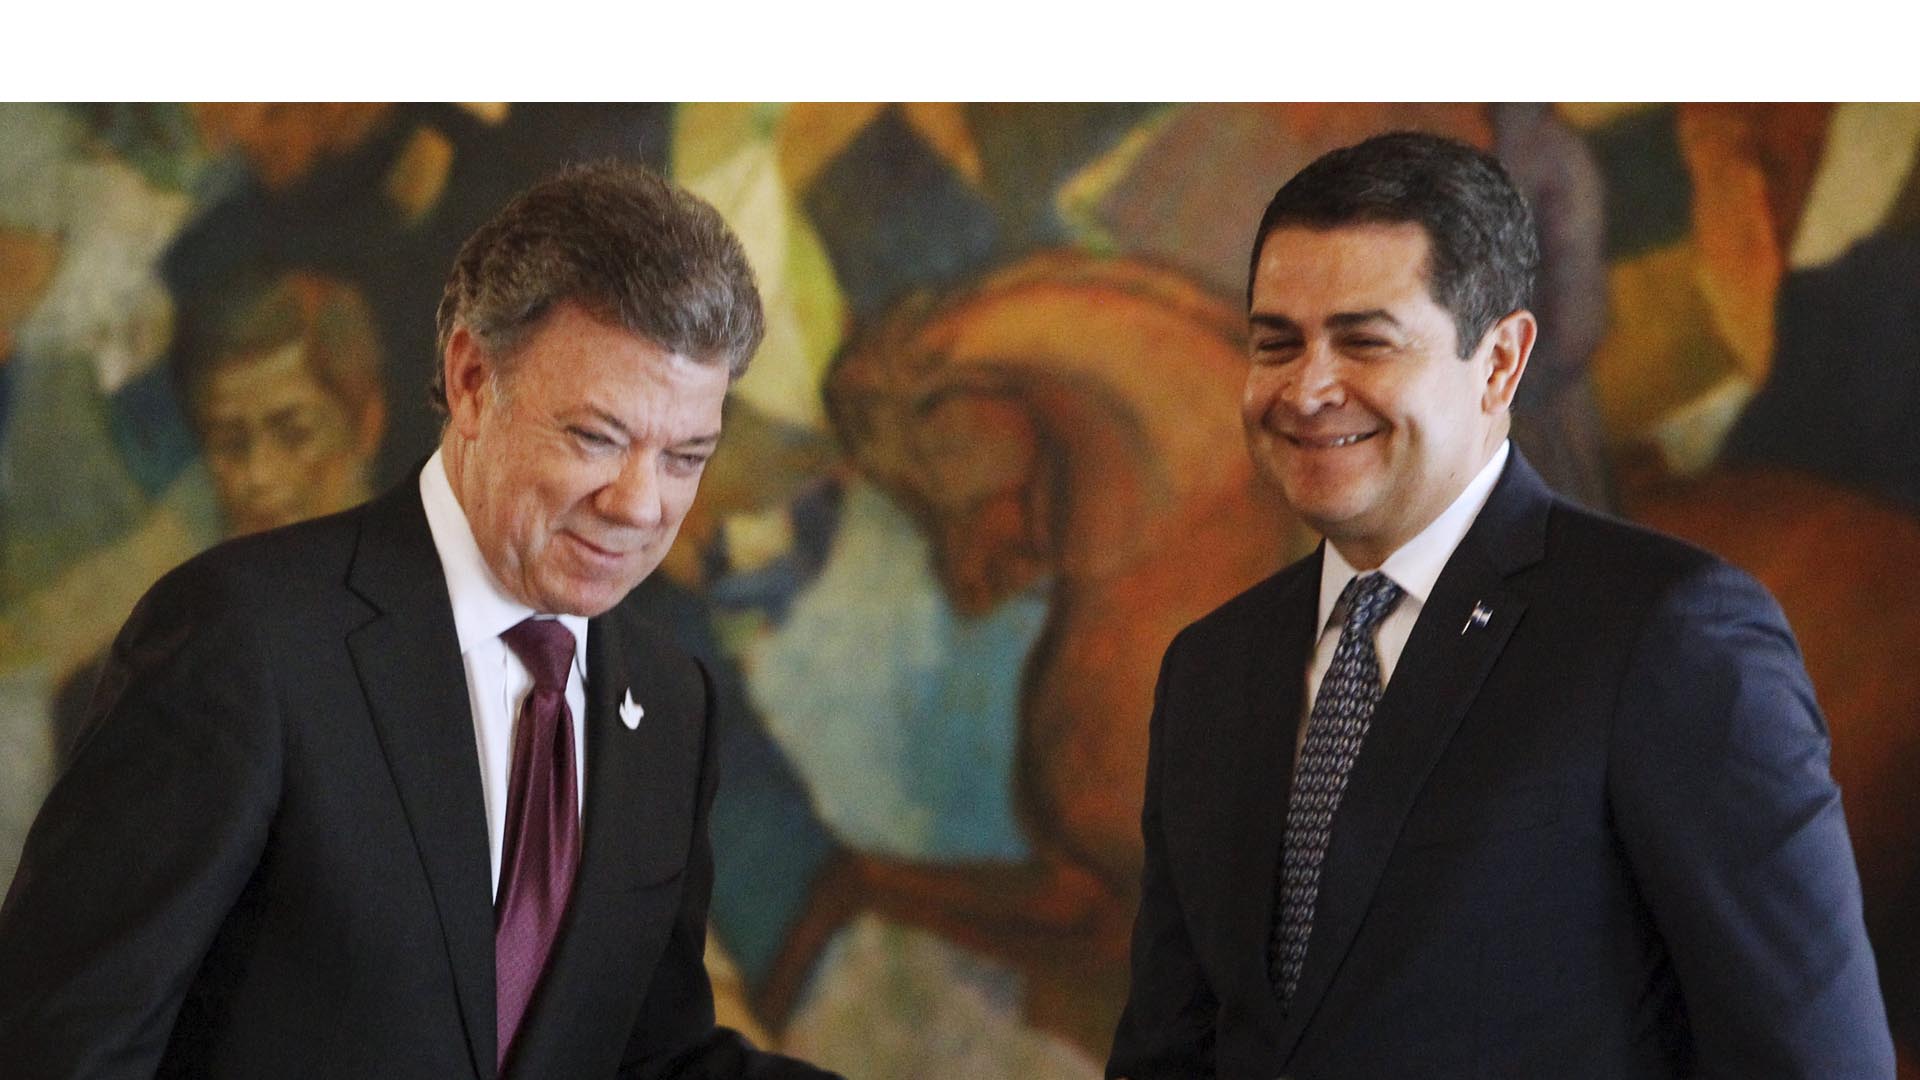 El presidente colombiano recomendó paciencia y perseverancia para derrotar al crimen organizado en la nación centroamericana